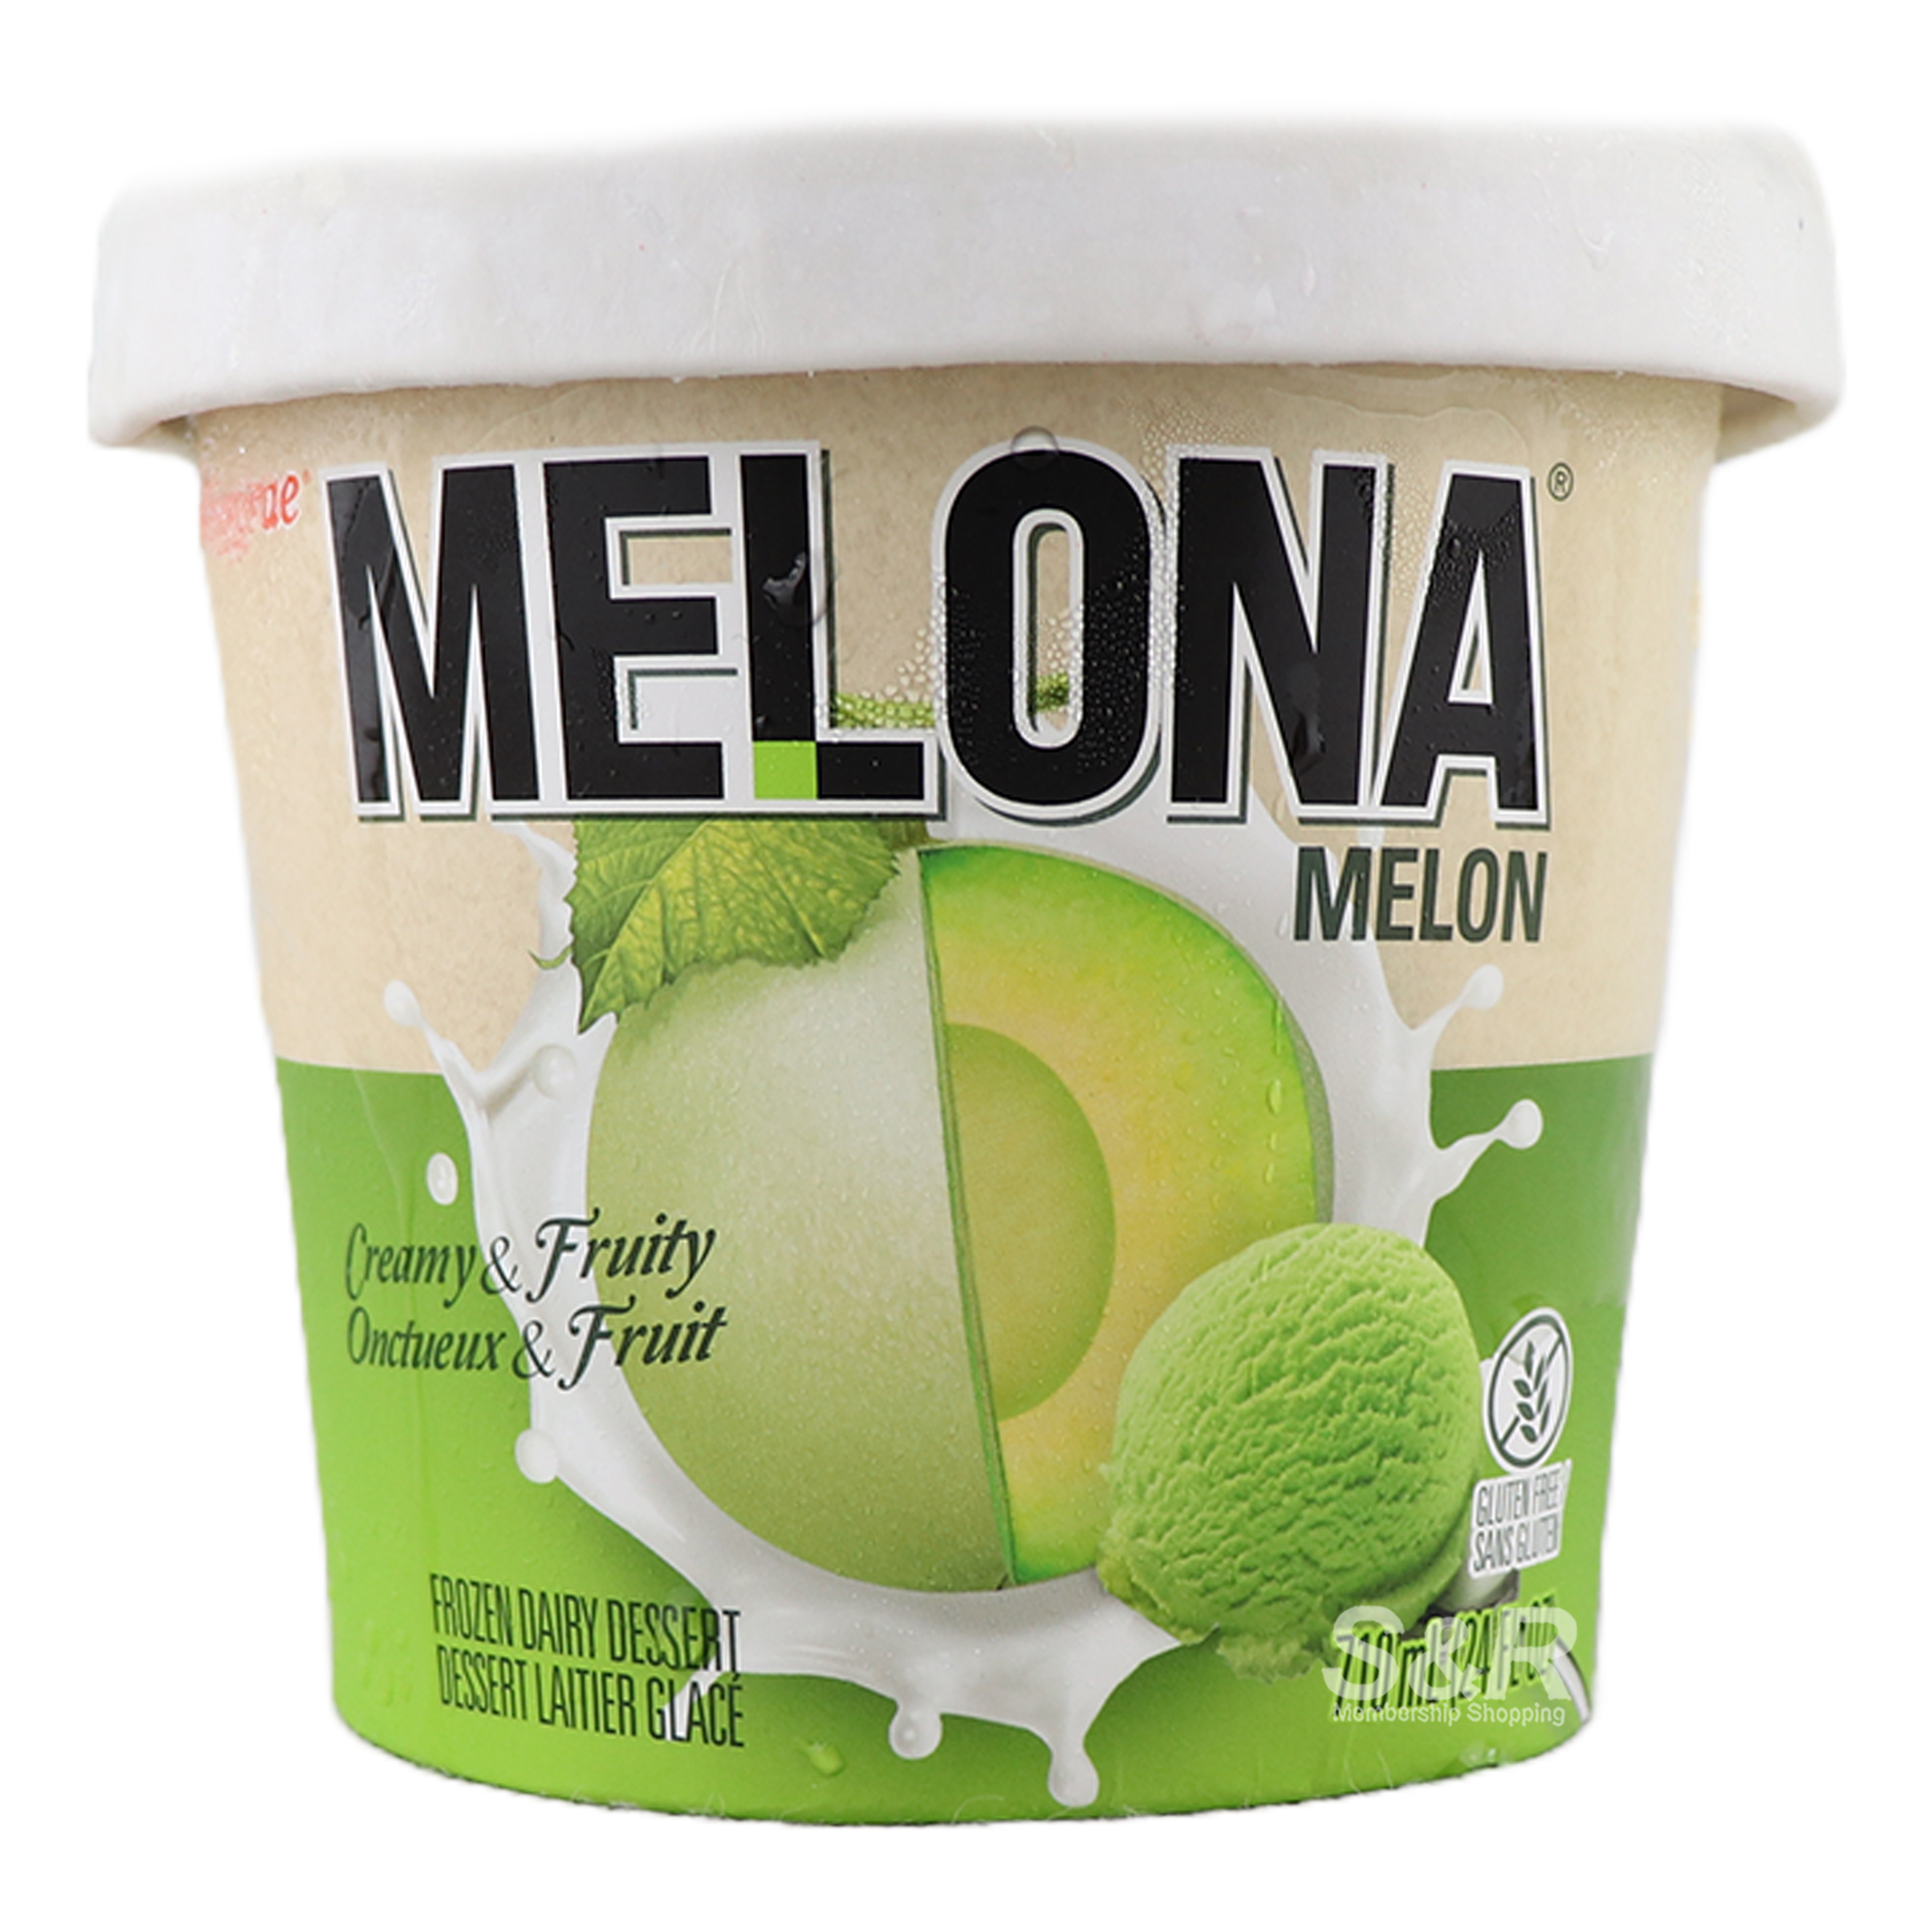 Melona Melon Ice Cream 710mL